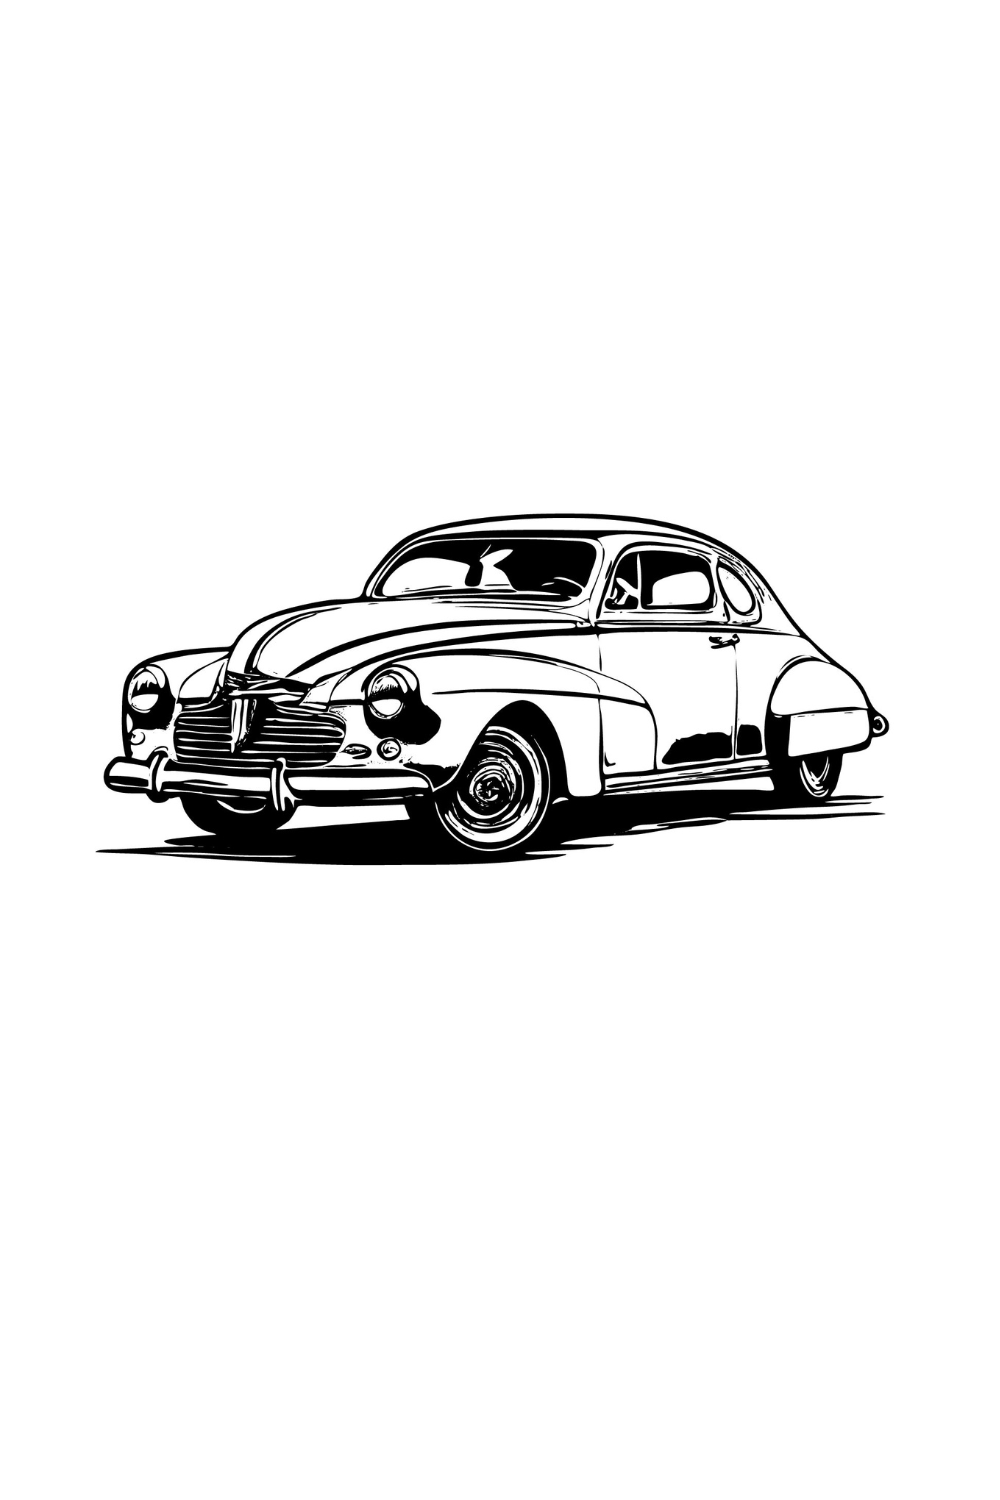 vintage car logo illustrations pinterest preview image.